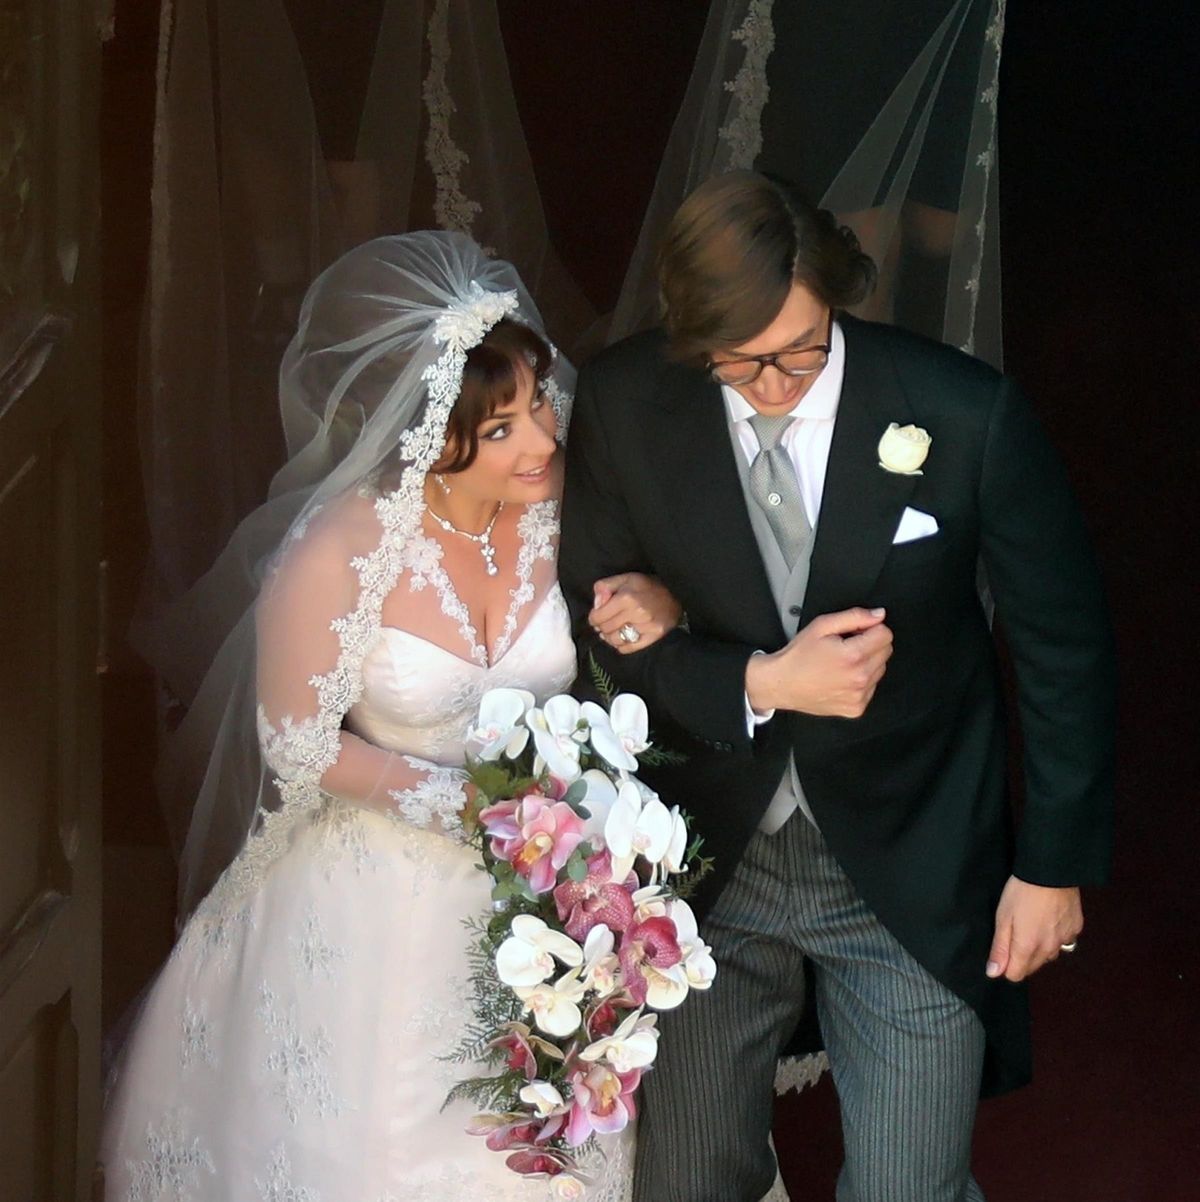 GUCCI WEDDING DRESS